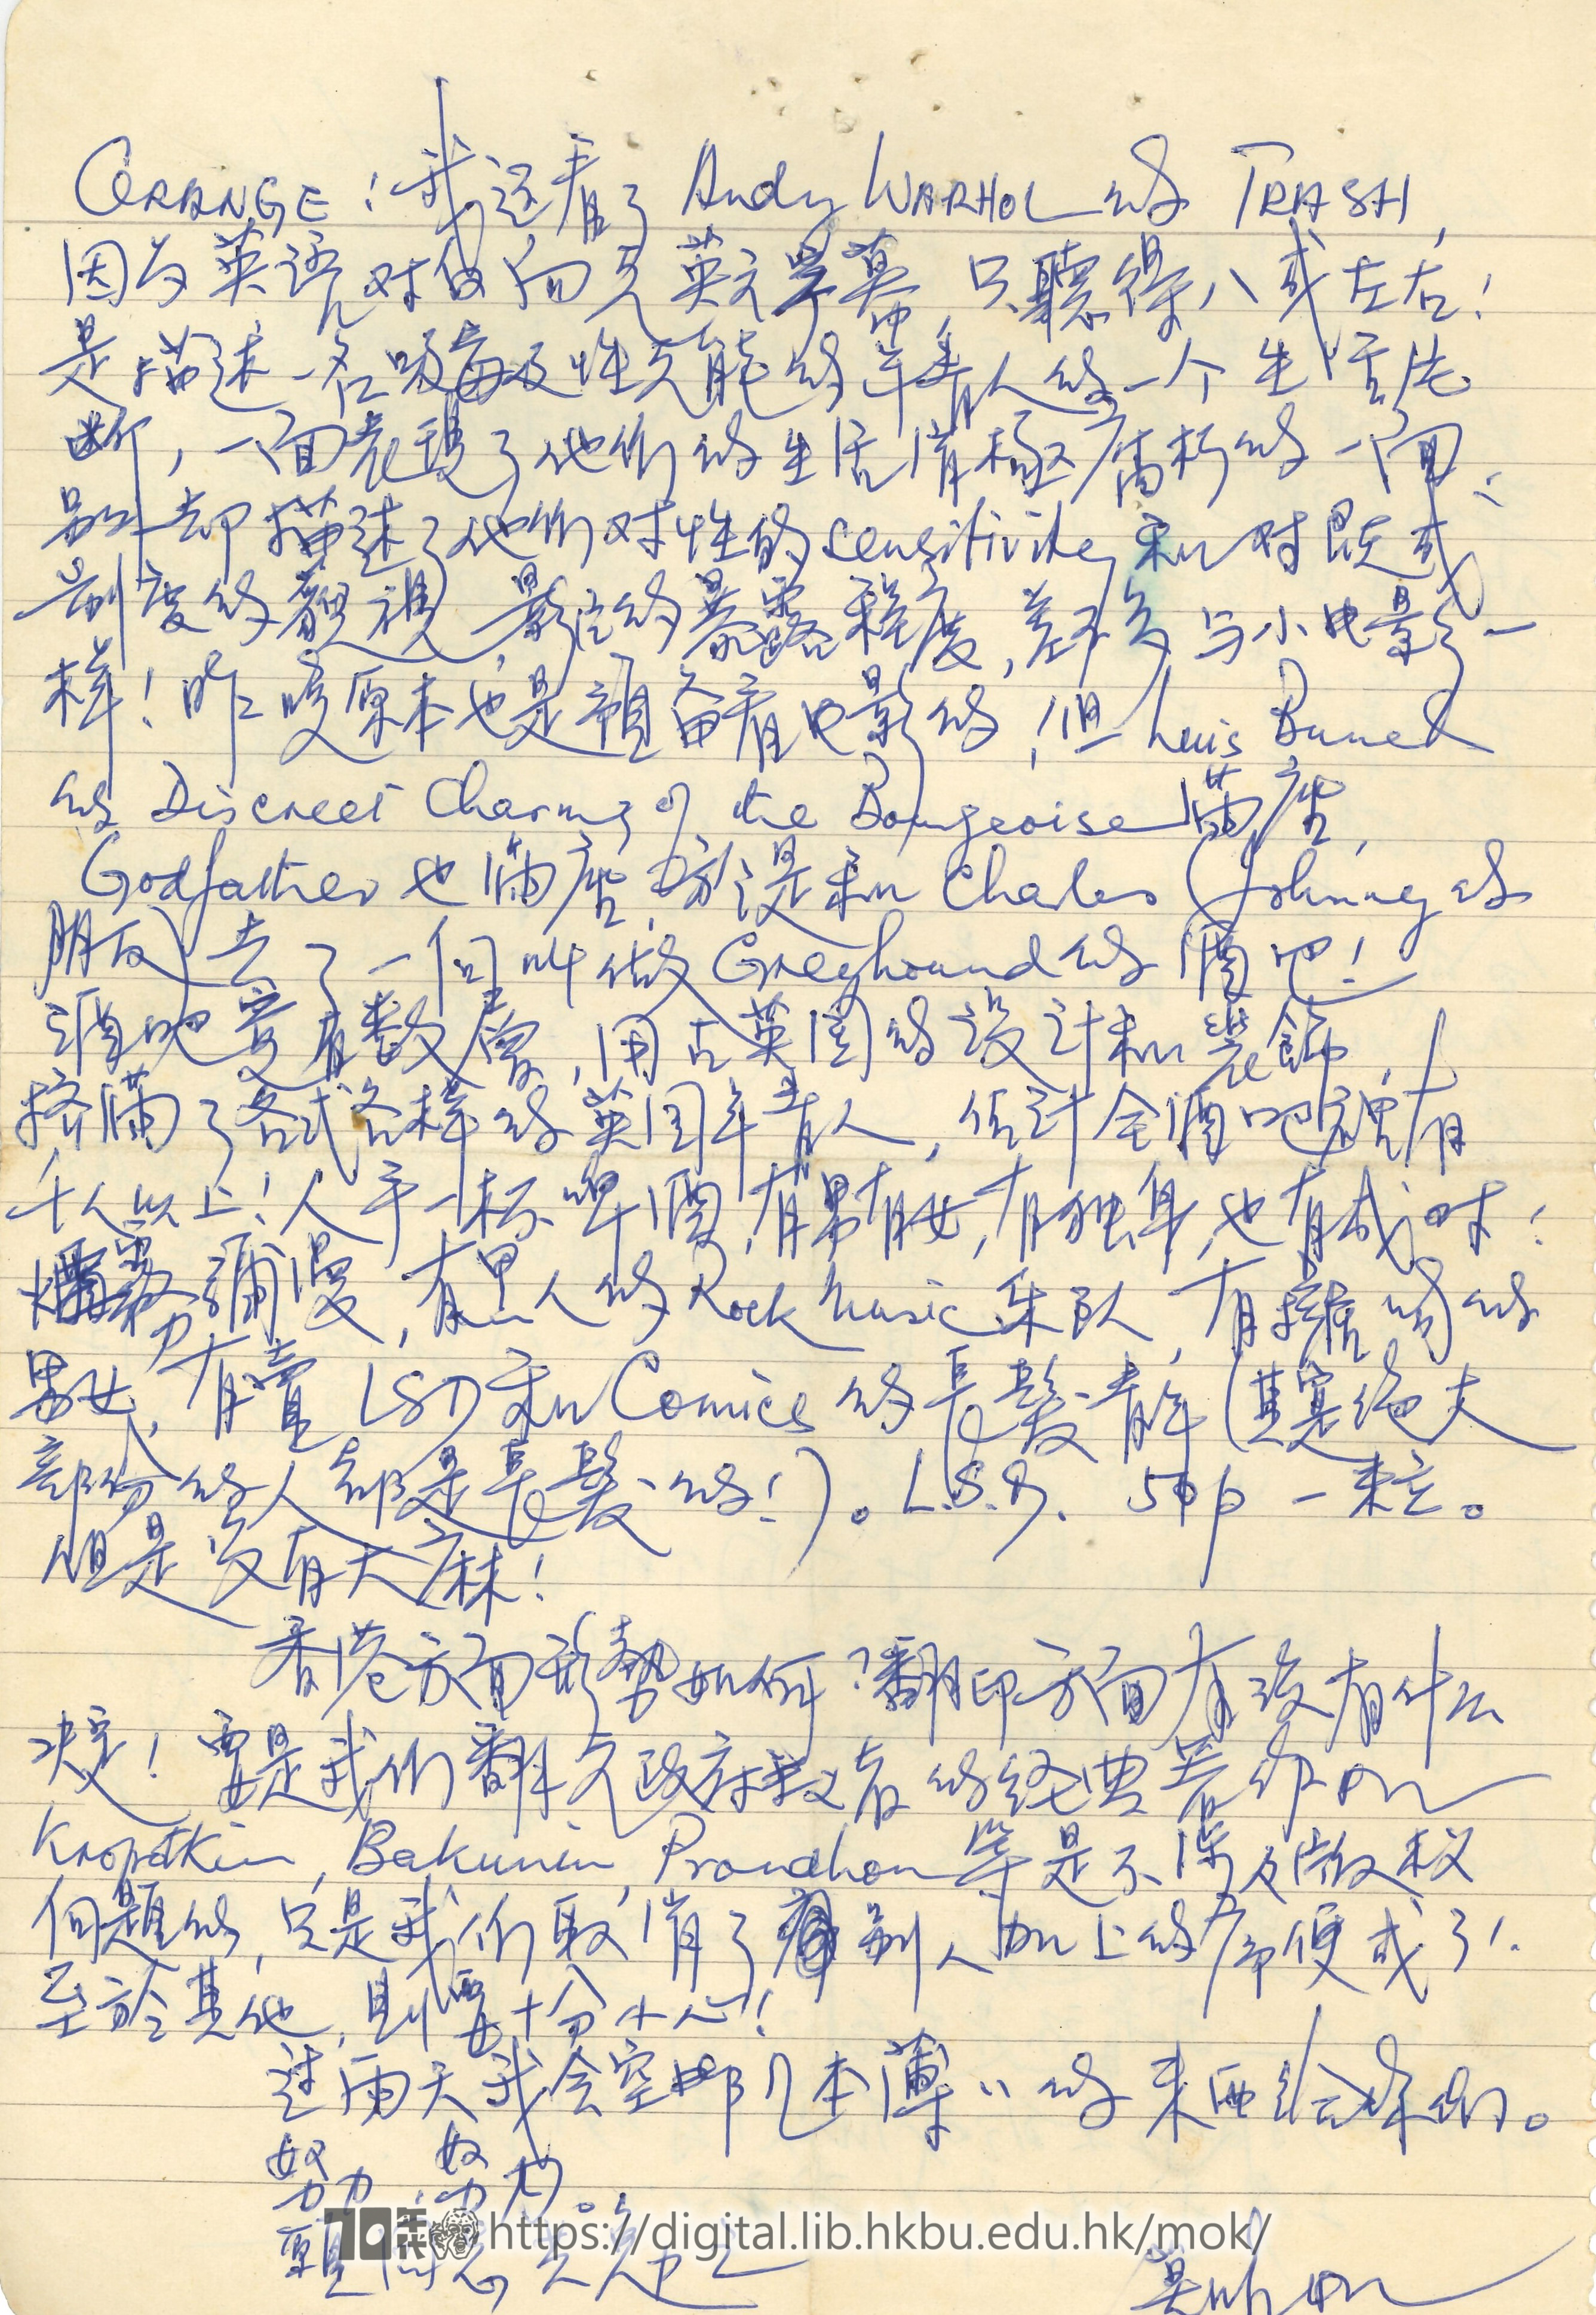   Letter from Mok Chiu Yu to members of United Front MOK, Chiu Yu 